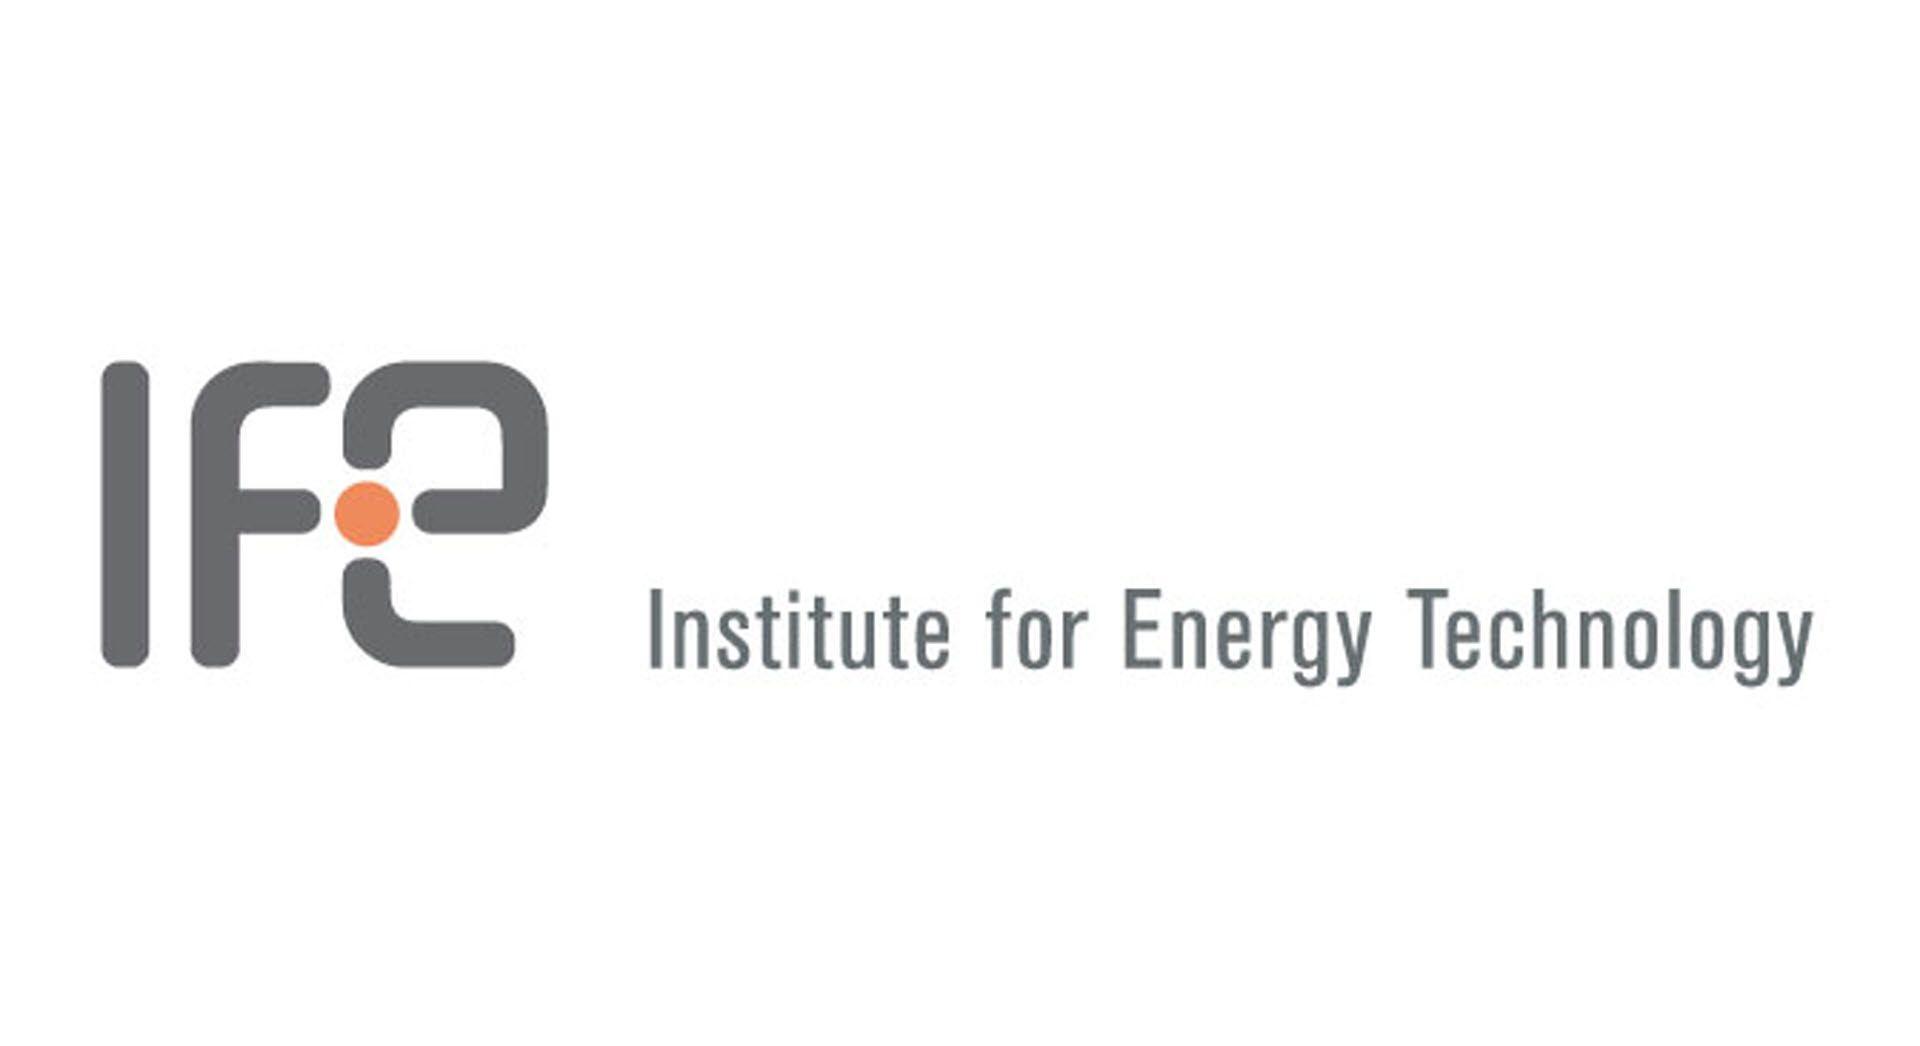 IFE Logo - Members